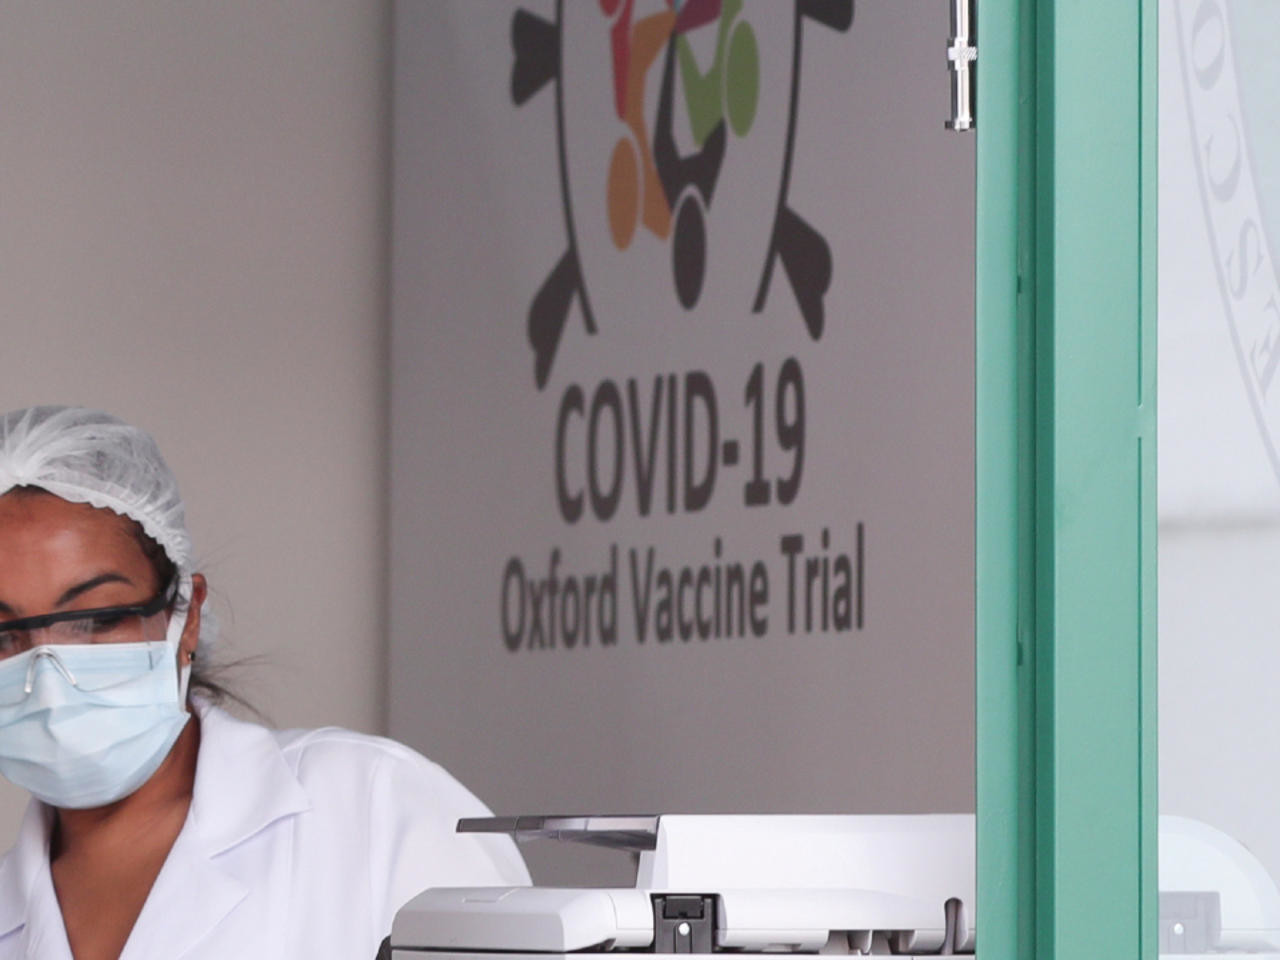 Оксфордын эрдэмтдийн гарган авч буй вакцинаас гаж нөлөө илэрч, туршилтыг түр зогсоожээ